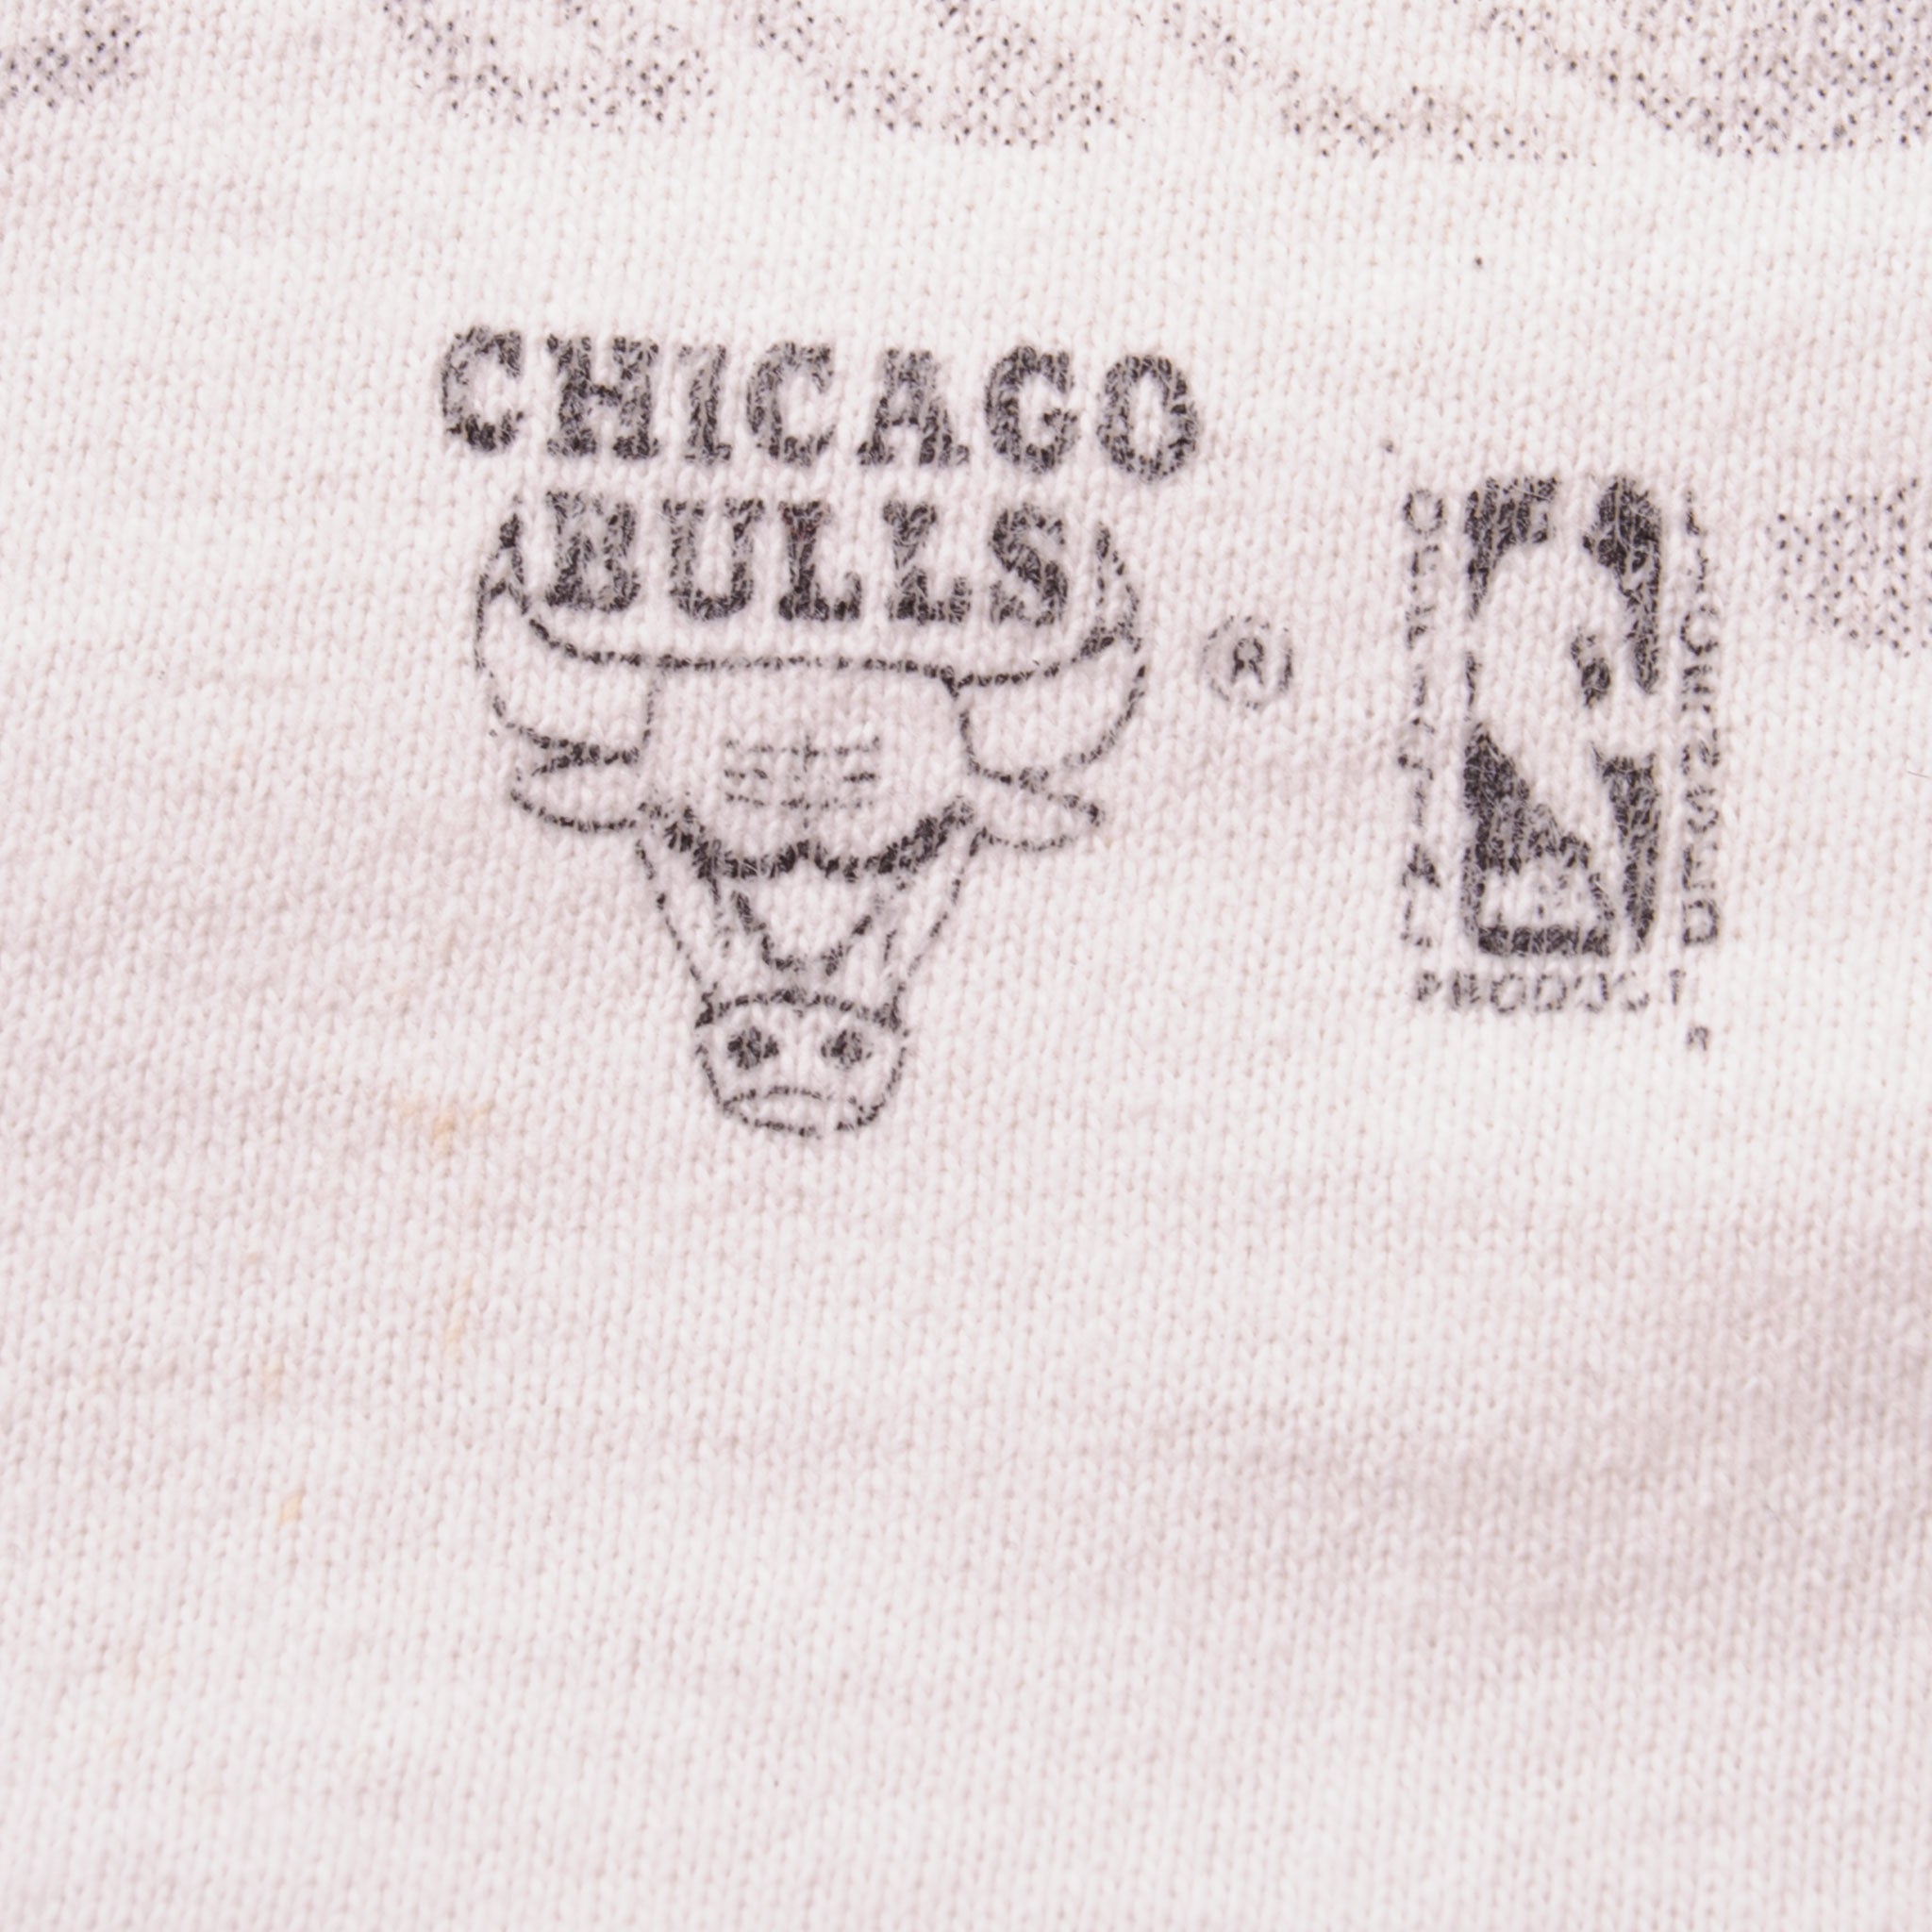 Buy Vtg 90s Chicago Bulls Ring World Champion T Shirt Online in India 